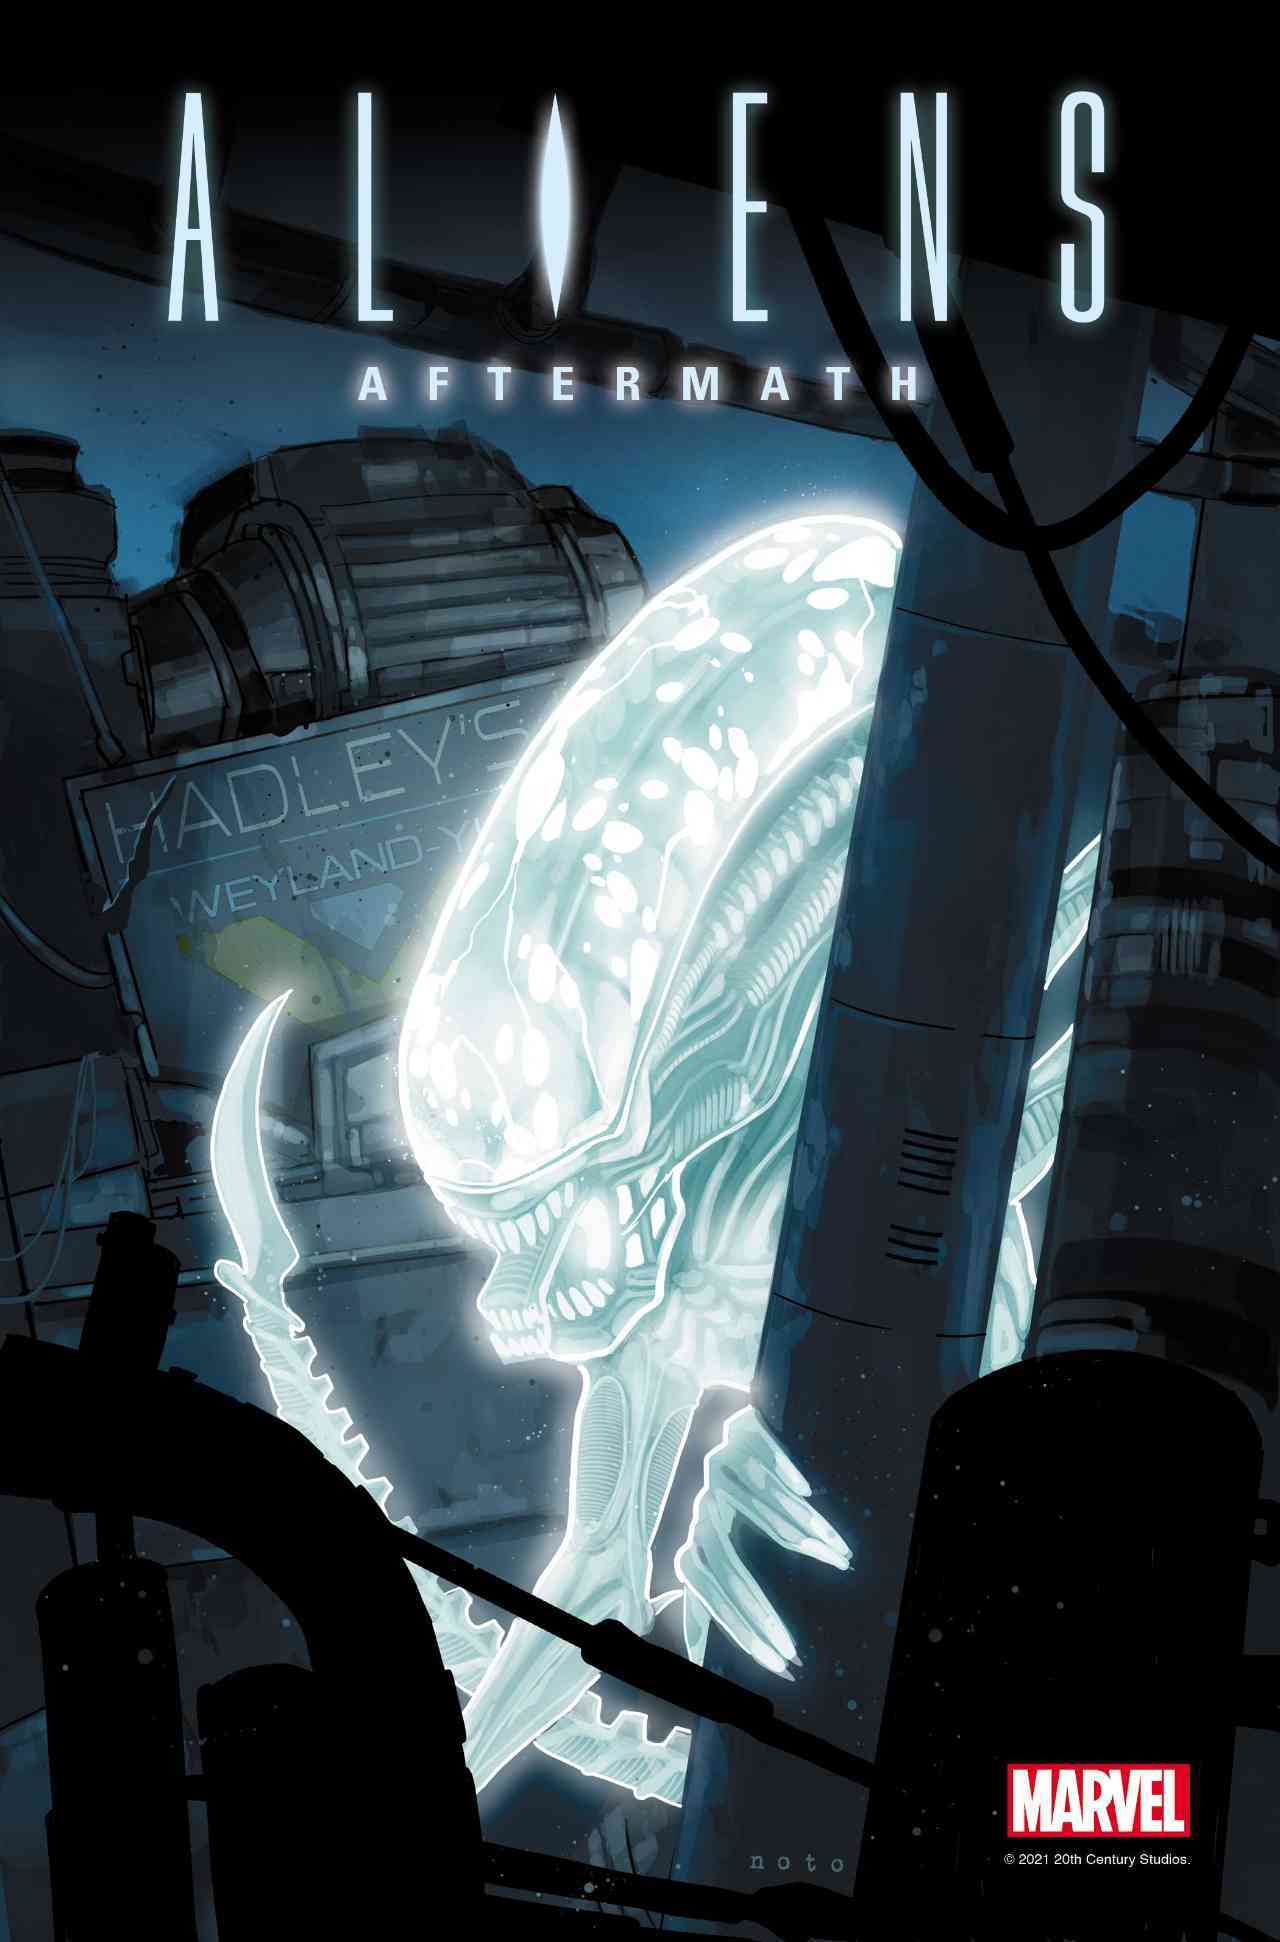 زنومورف روی جلد کتاب کمیک تک قسمتی aliens: aftermath